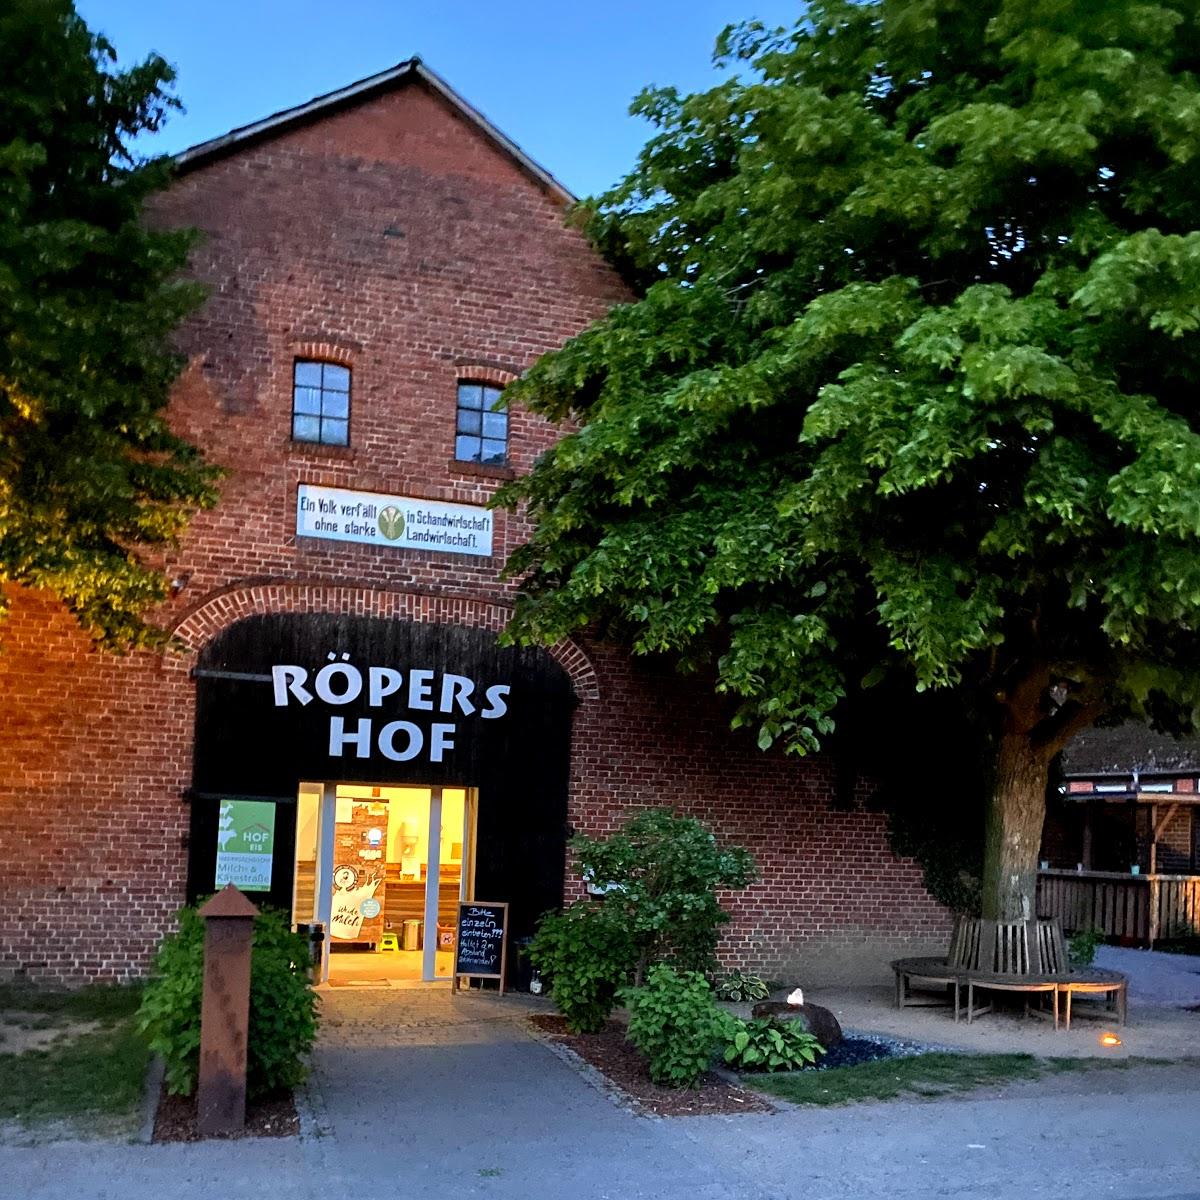 Restaurant "Röpers Hof" in Scheeßel